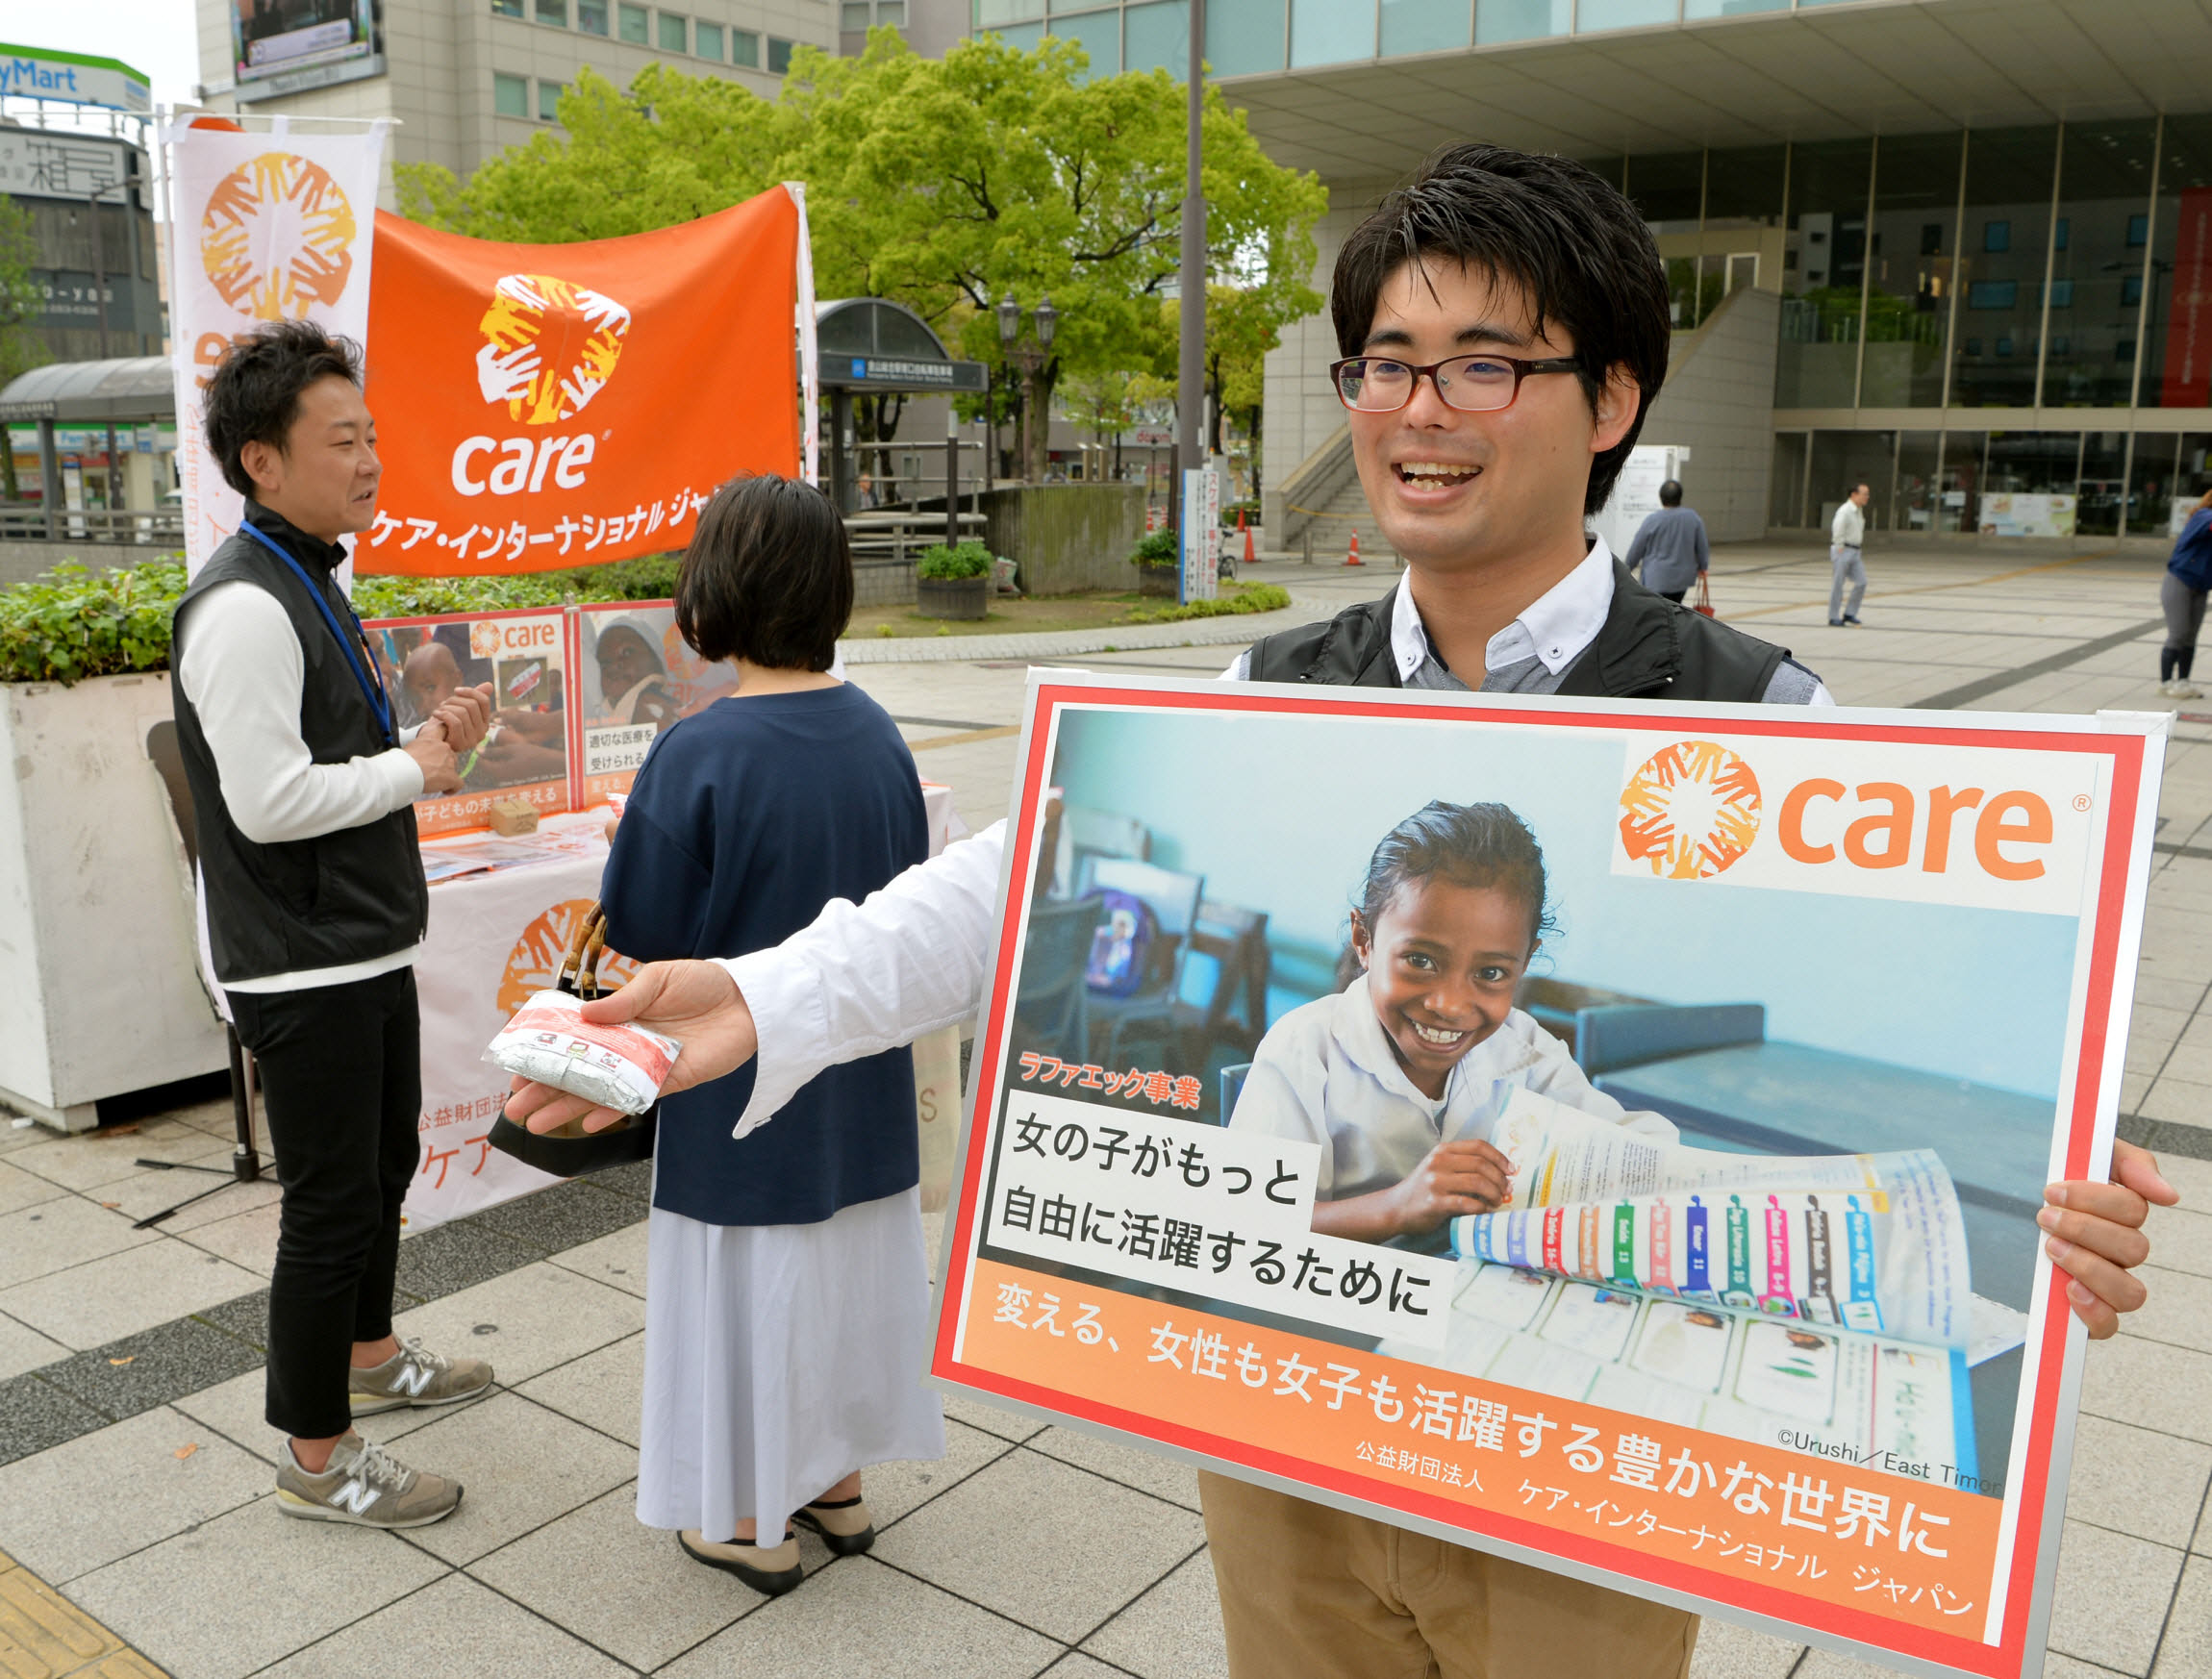 【8月開催】名古屋近郊で街頭キャンペーンを実施しています